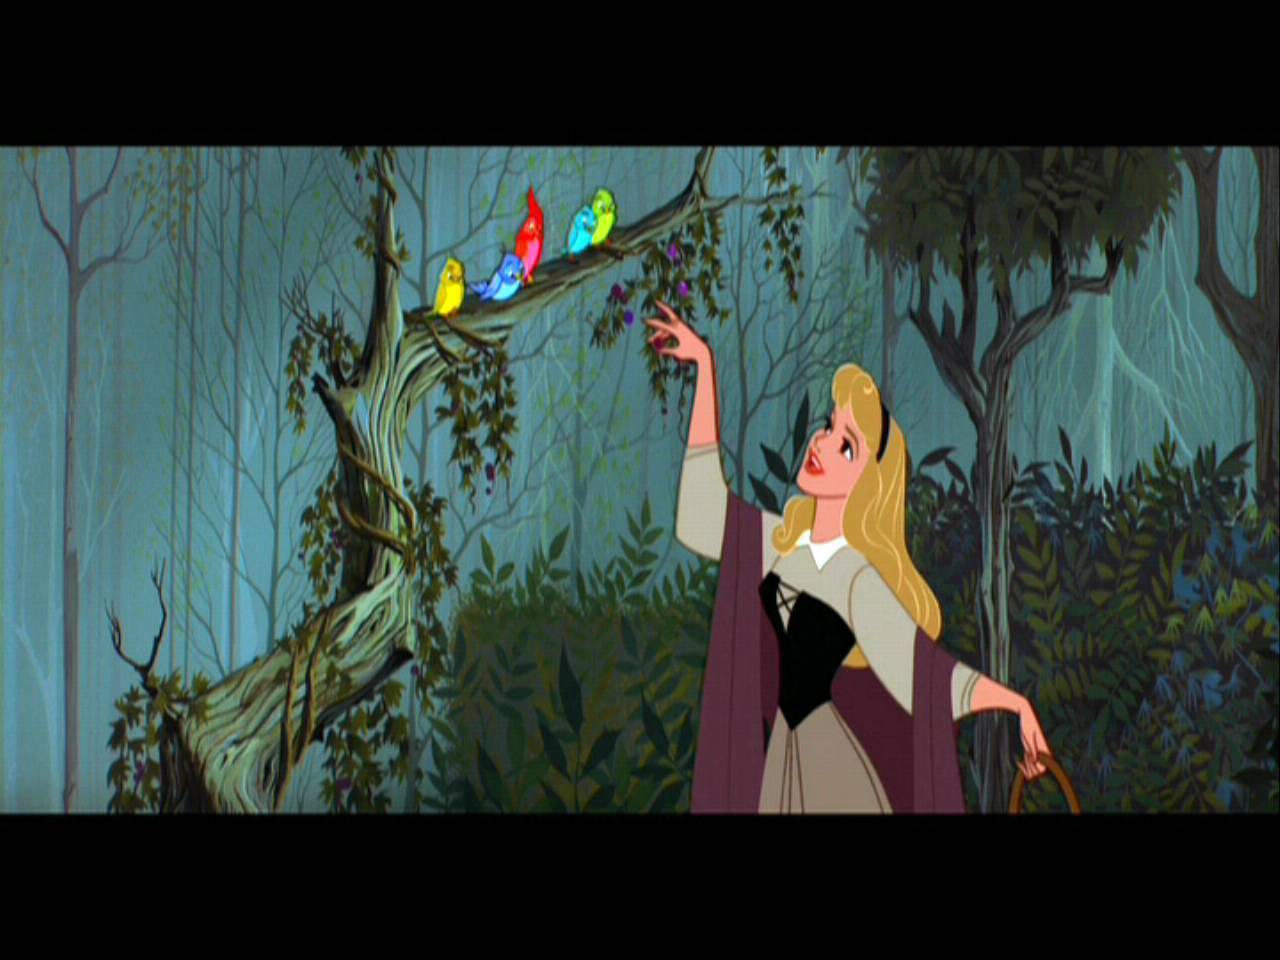 Sleeping Beauty - Disney Image (5923300) - Fanpop